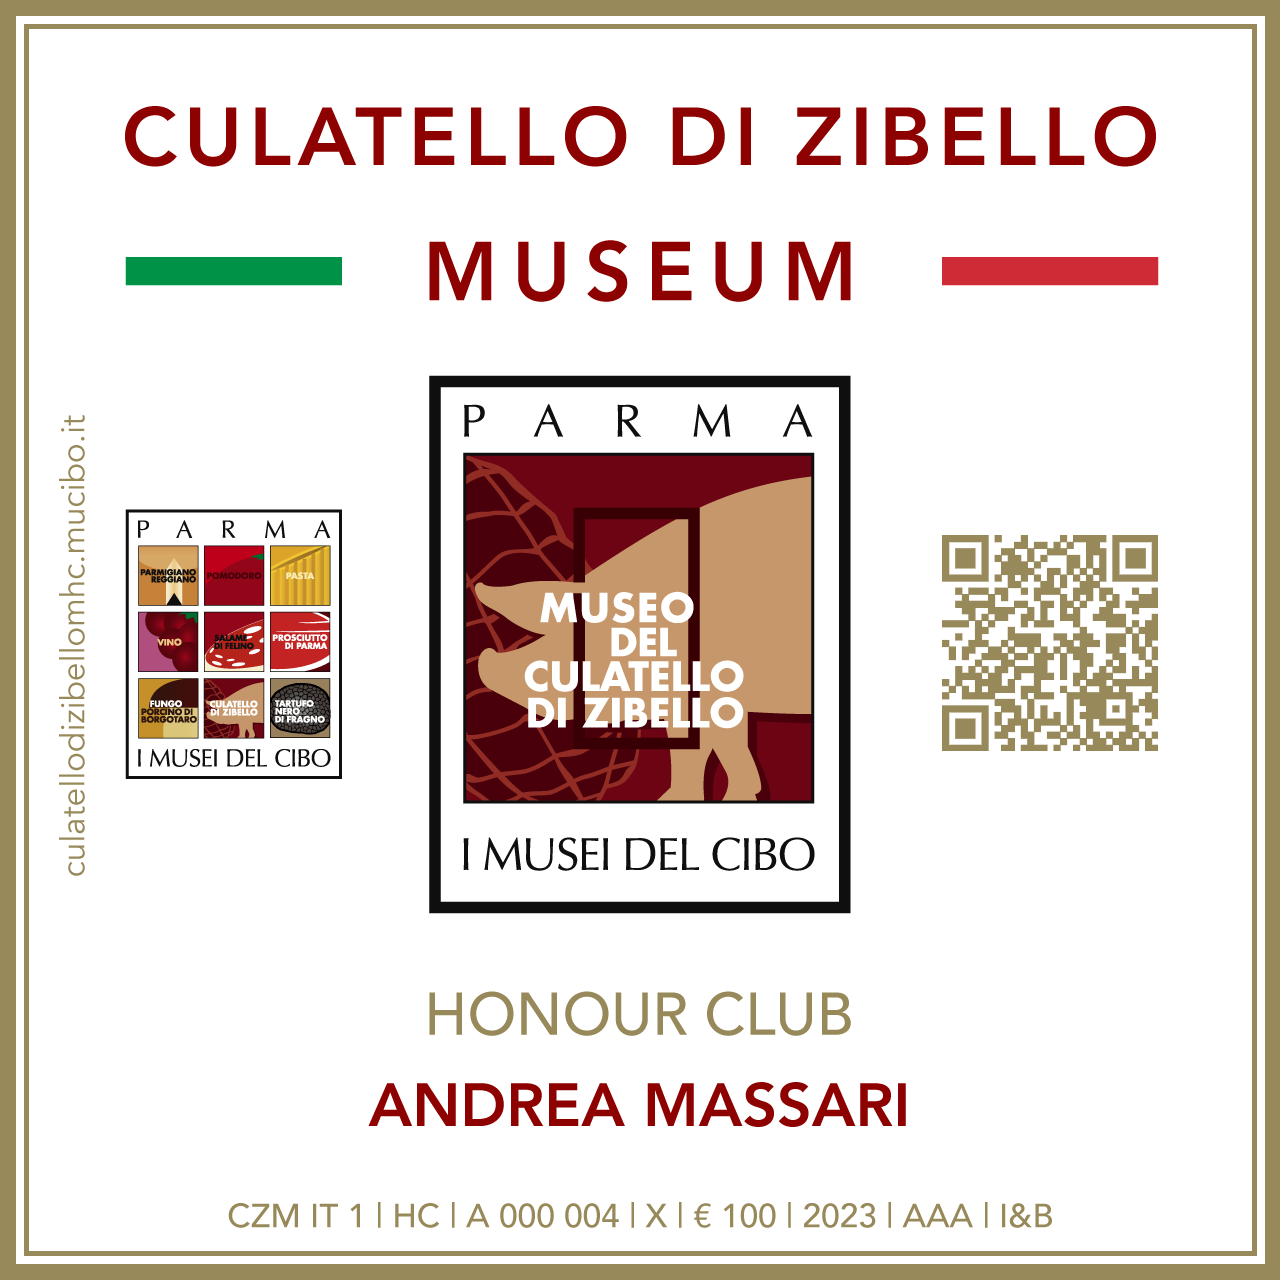 Culatello di Zibello Museum Honour Club - Token Id A 000 004 - ANDREA MASSARI